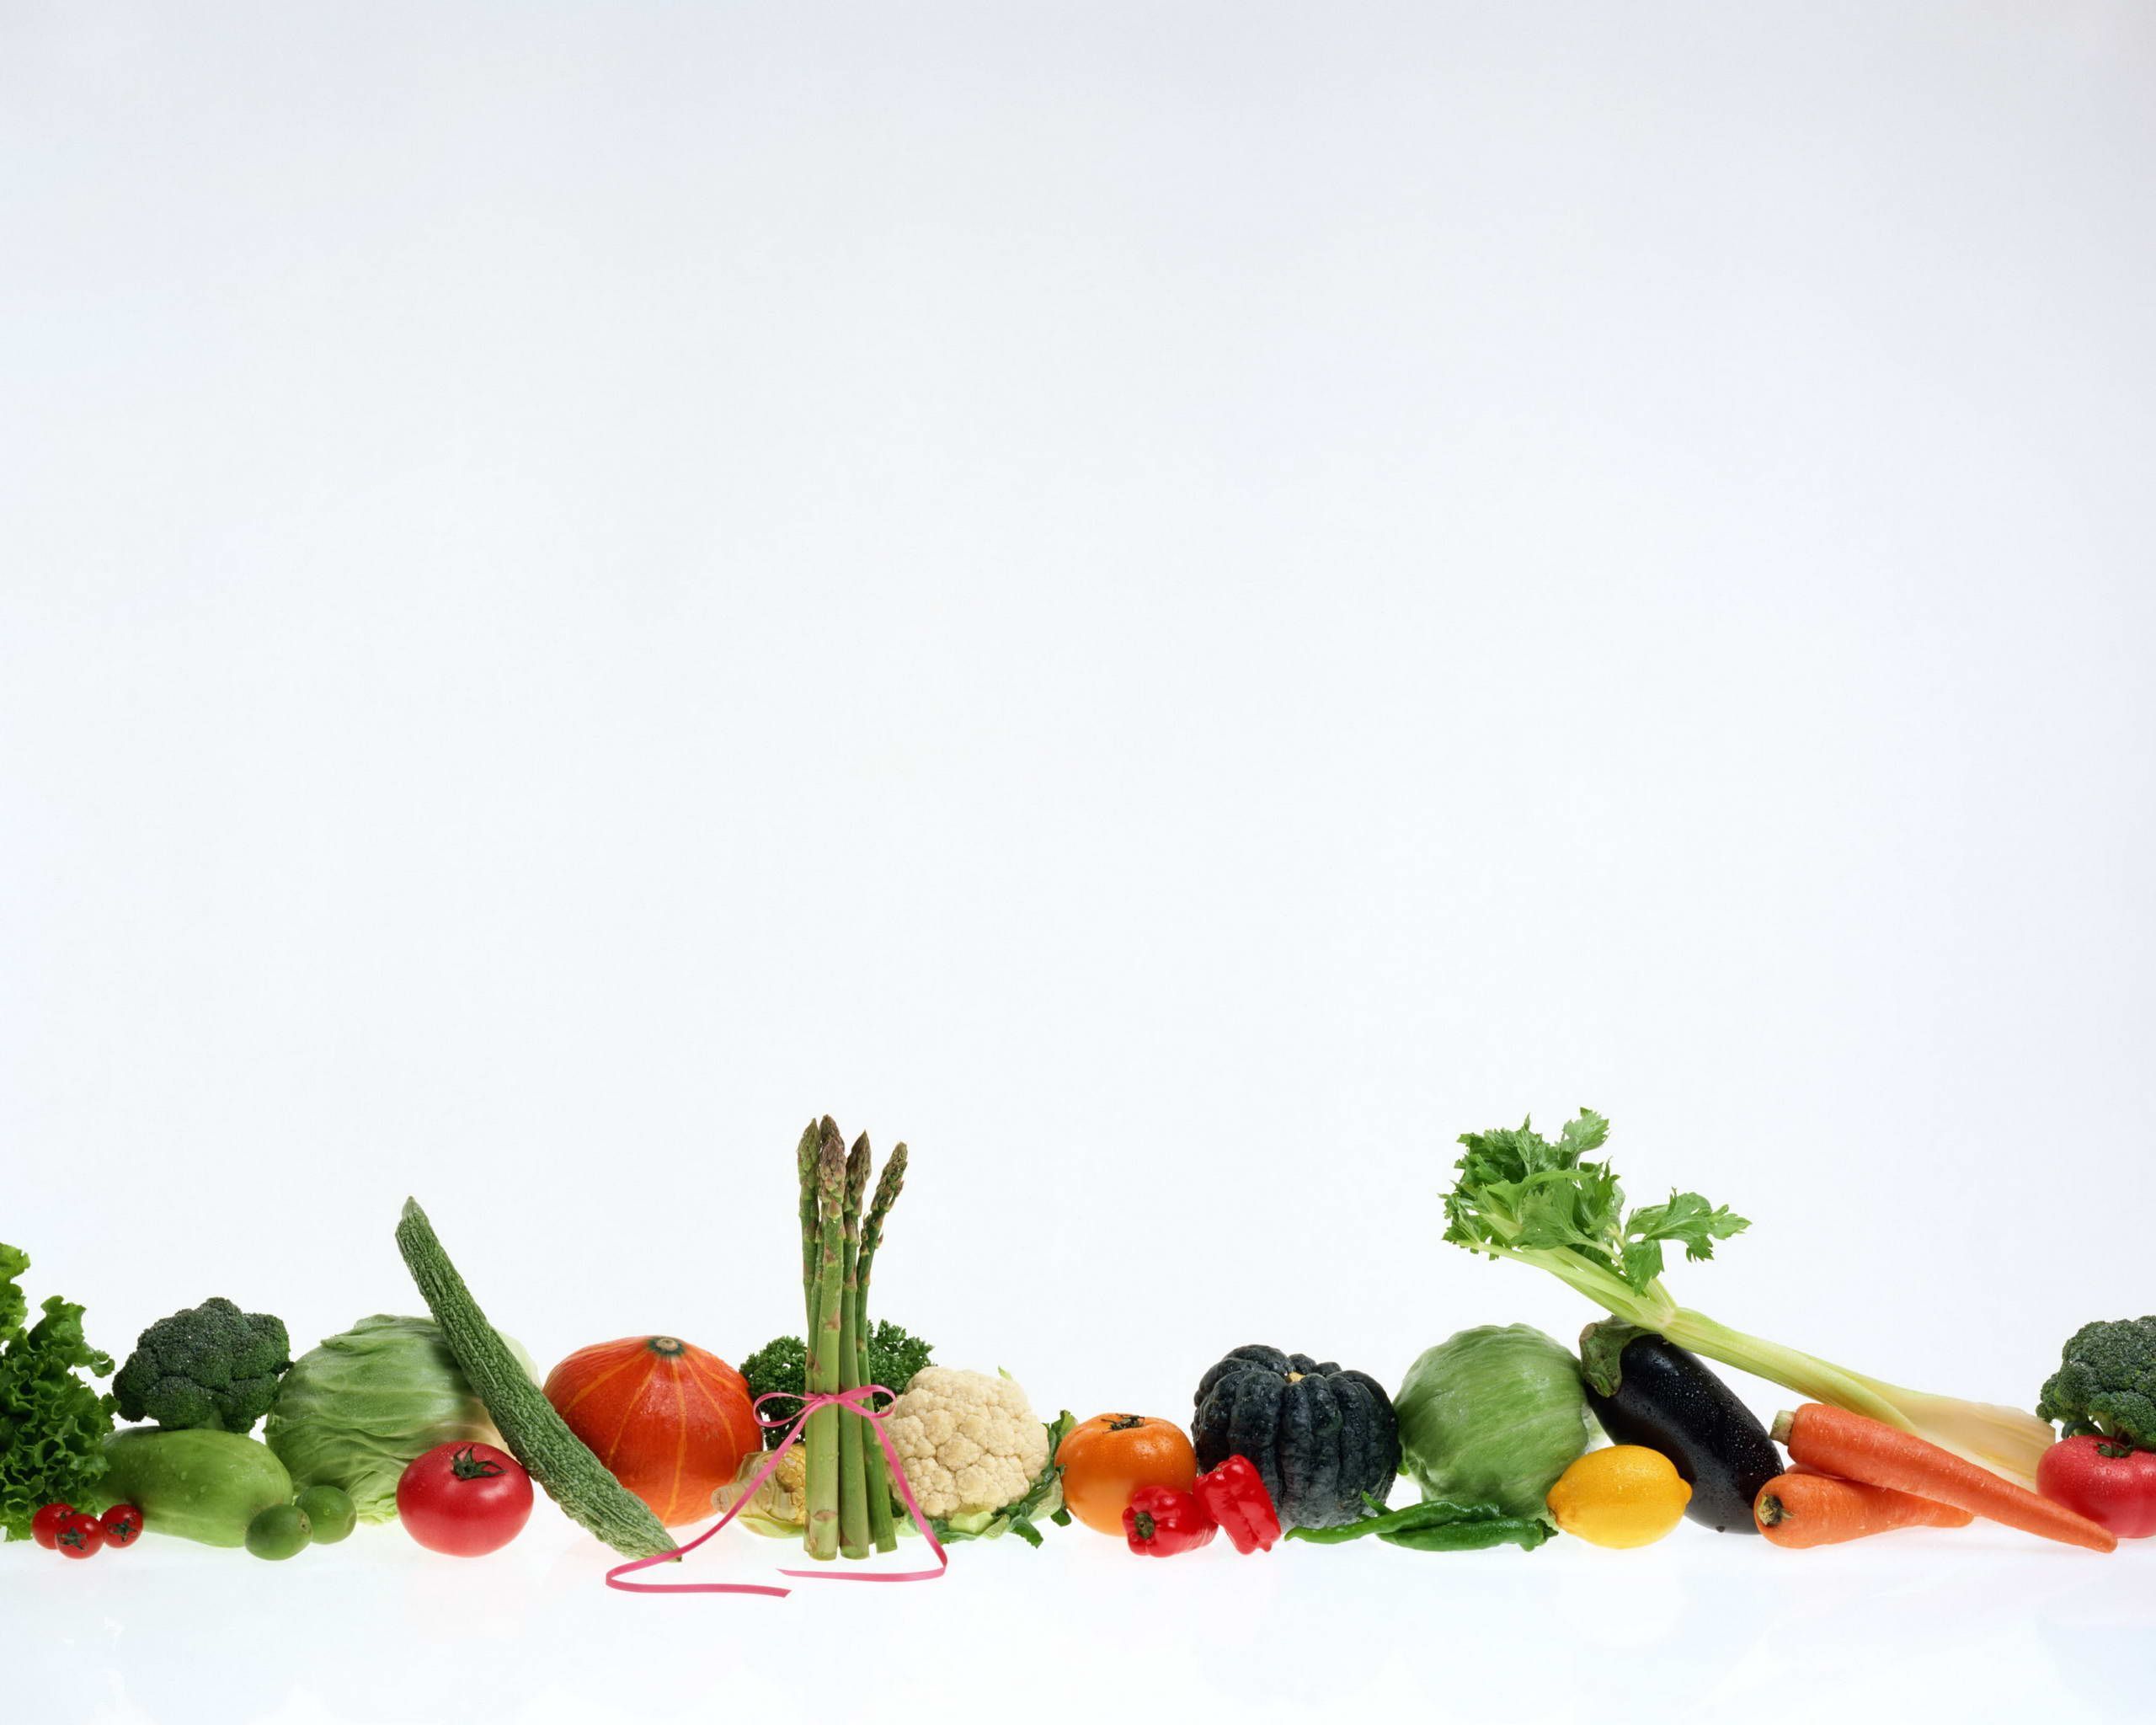 Fruits Vegetables Background. Fruits Vegetables Wallpaper, Vegetables Wallpaper and Roasted Vegetables Wallpaper